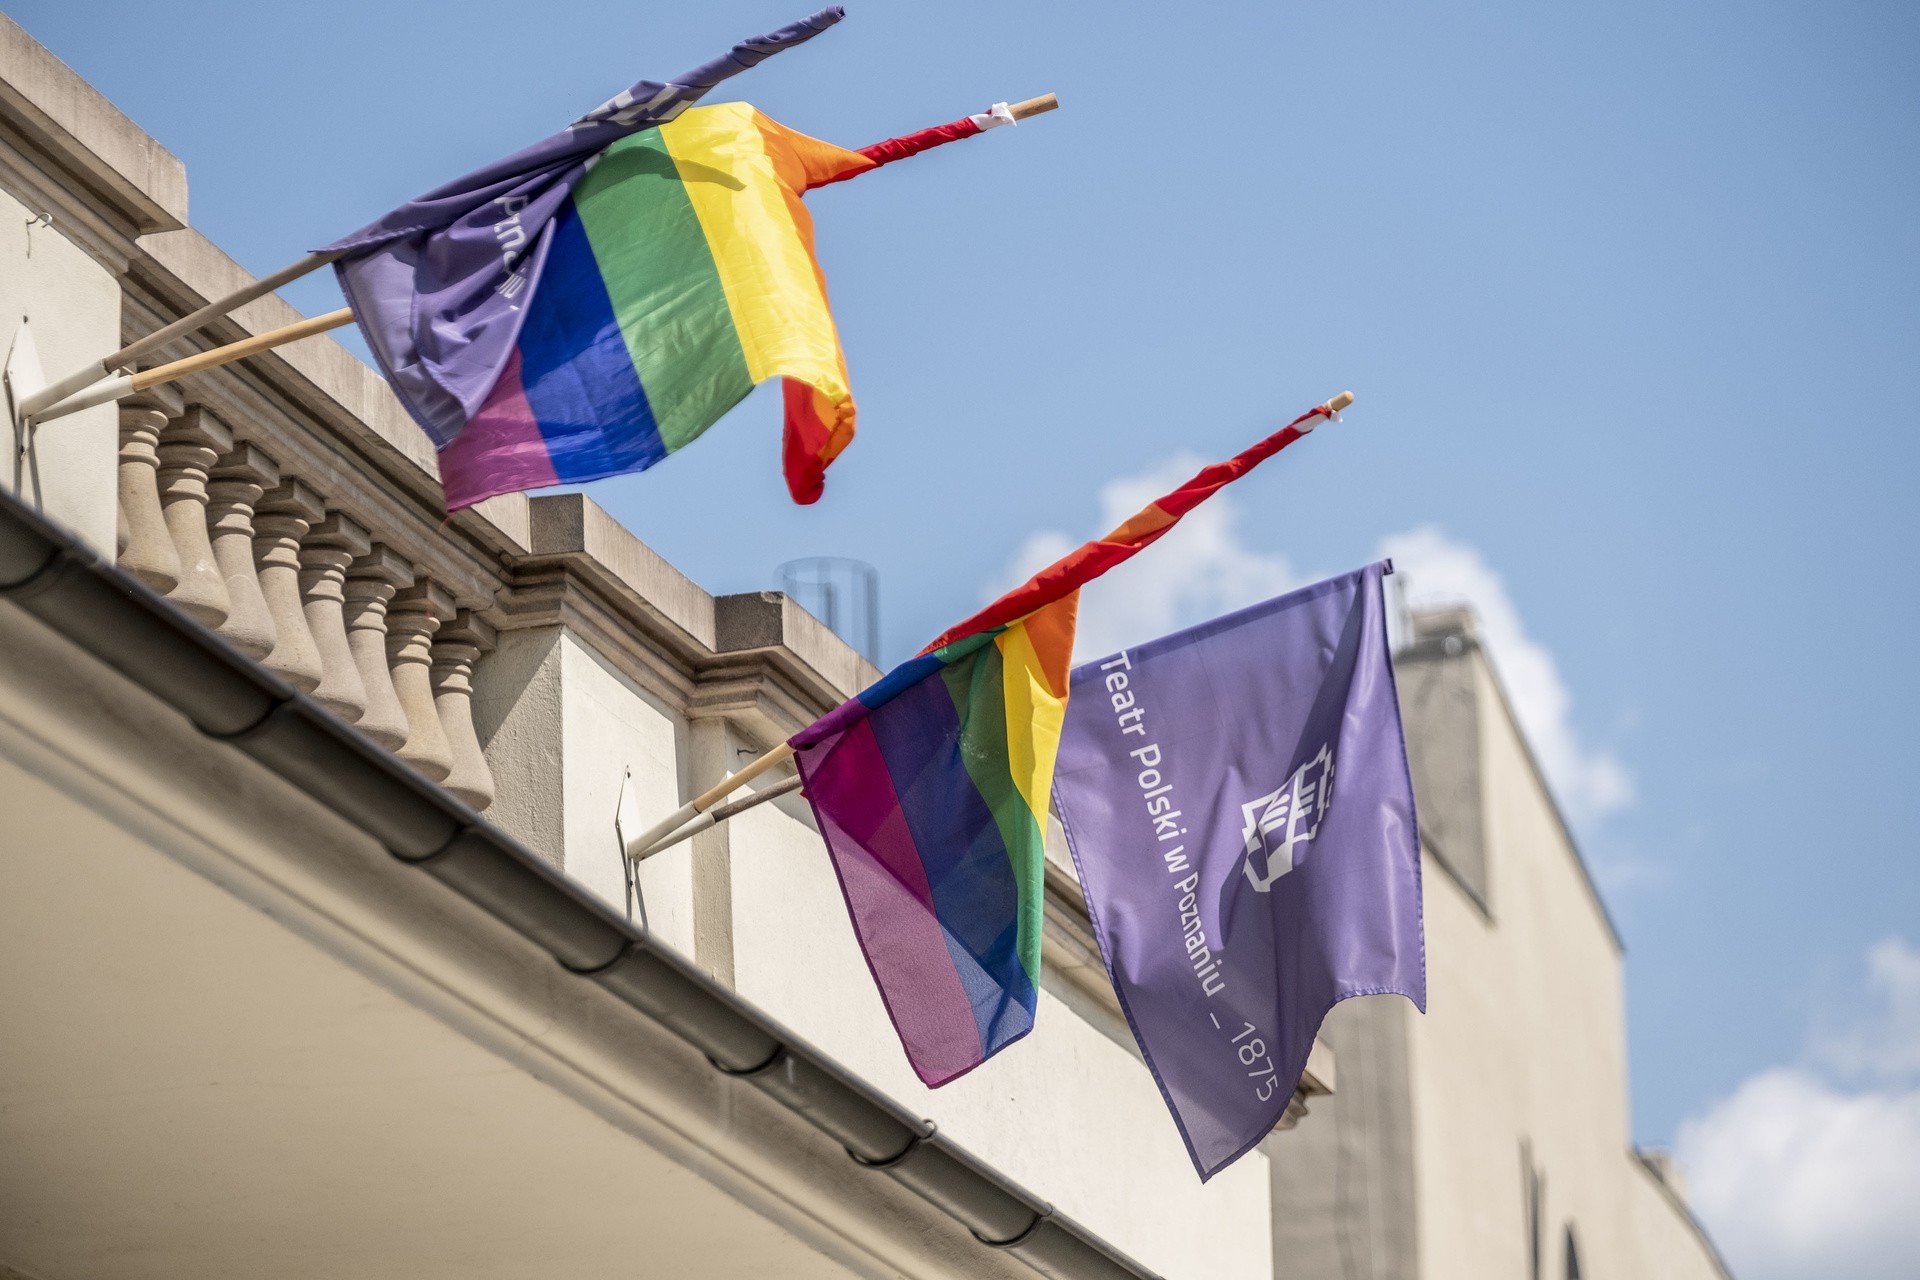 Poznańskie teatry i miejsca kultury solidaryzują się ze społecznością LGBT.  Wywieszają tęczowe flagi na budynkach | Głos Wielkopolski